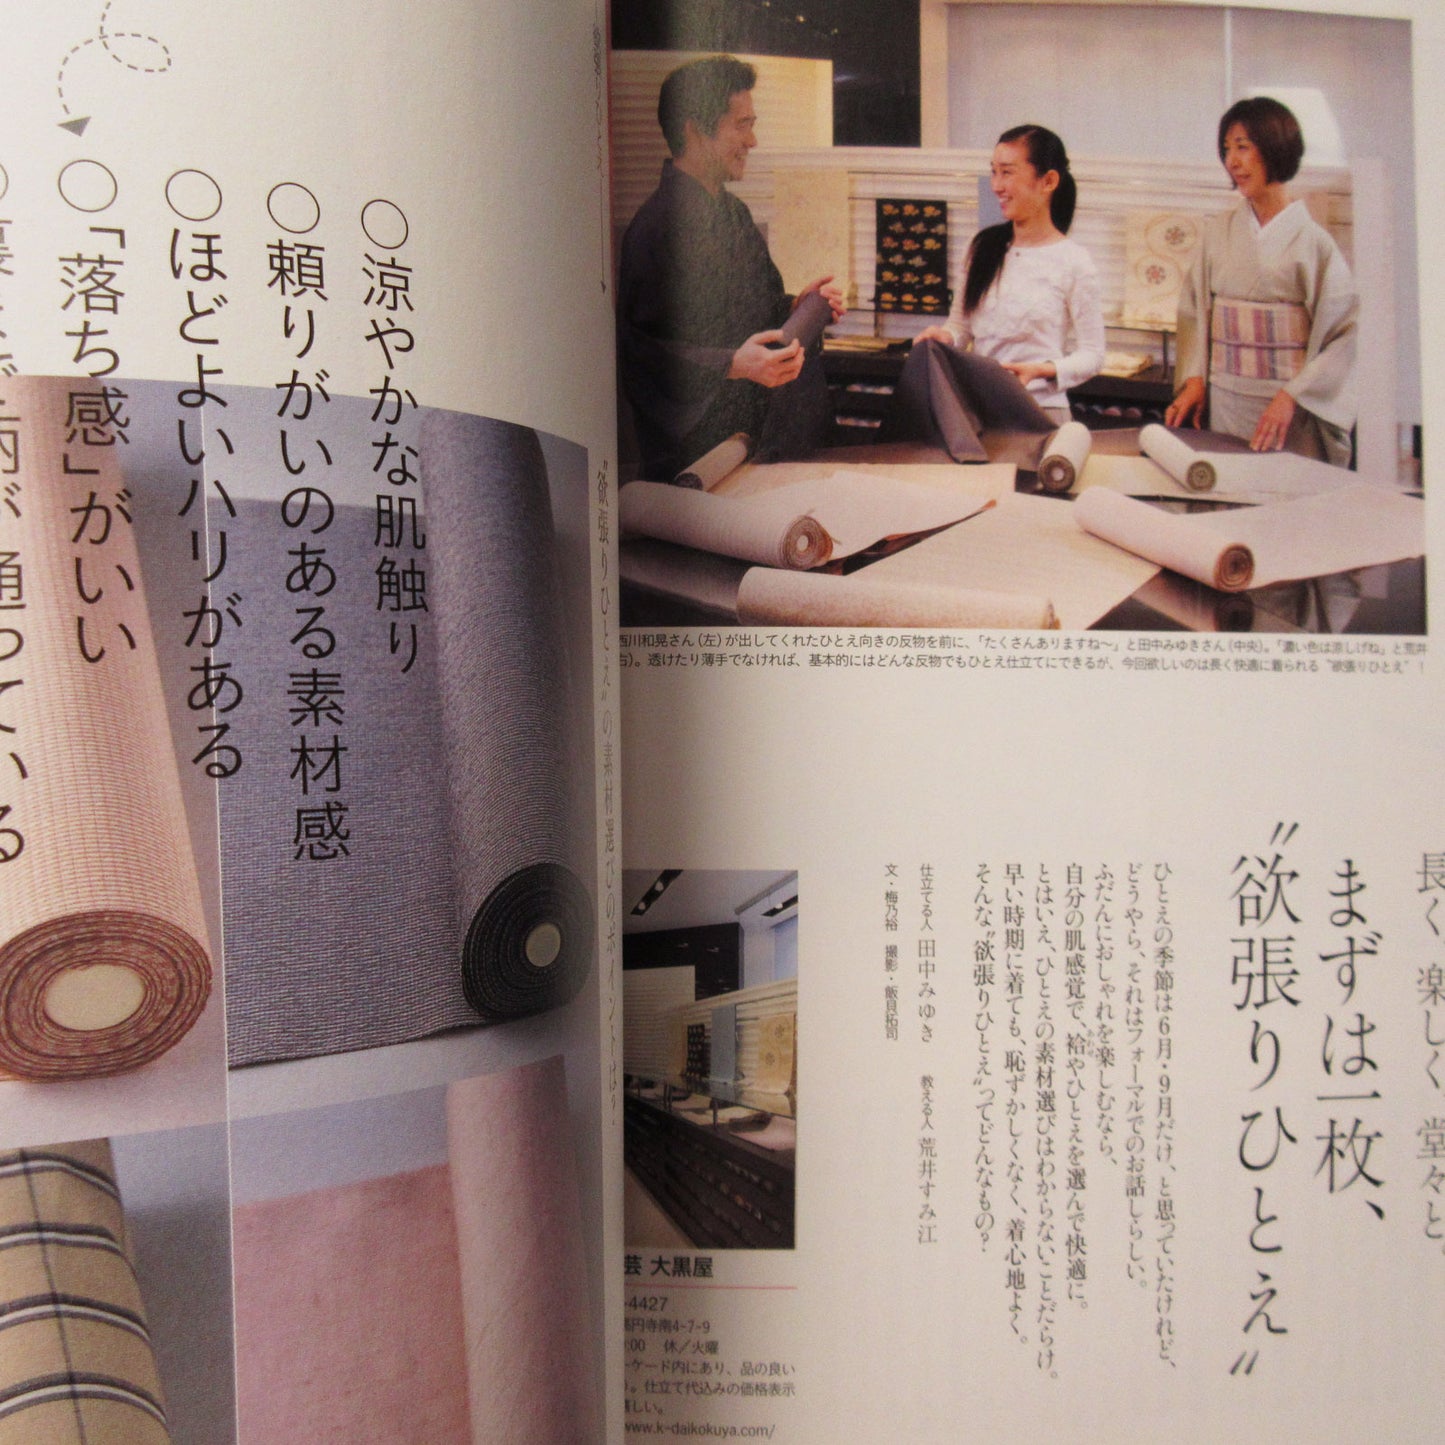 Nanaoh vol.17 Spring 2009